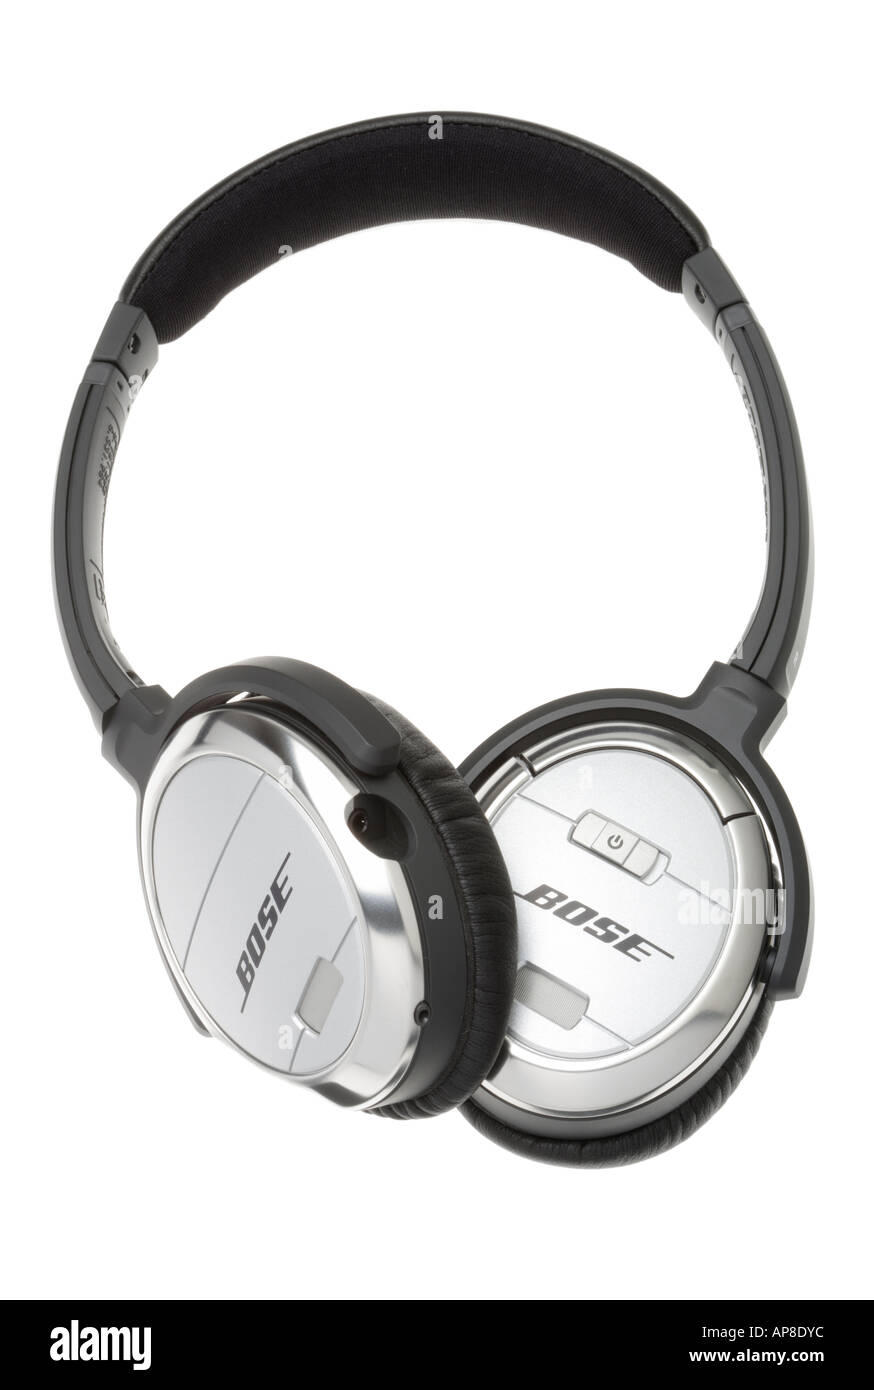 Bose headphones Stock Photo